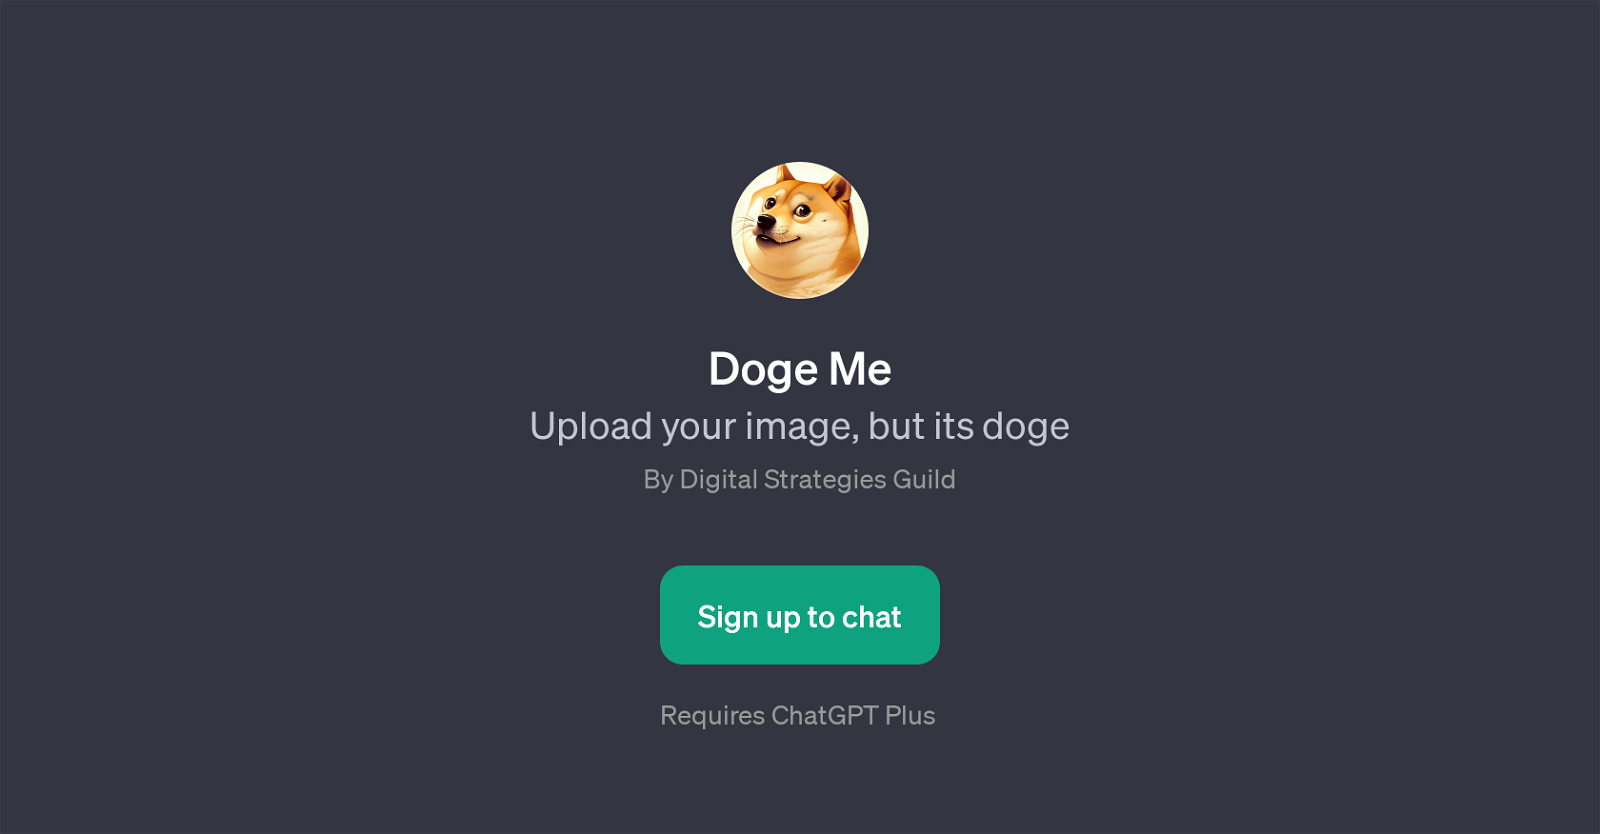 Doge Me website